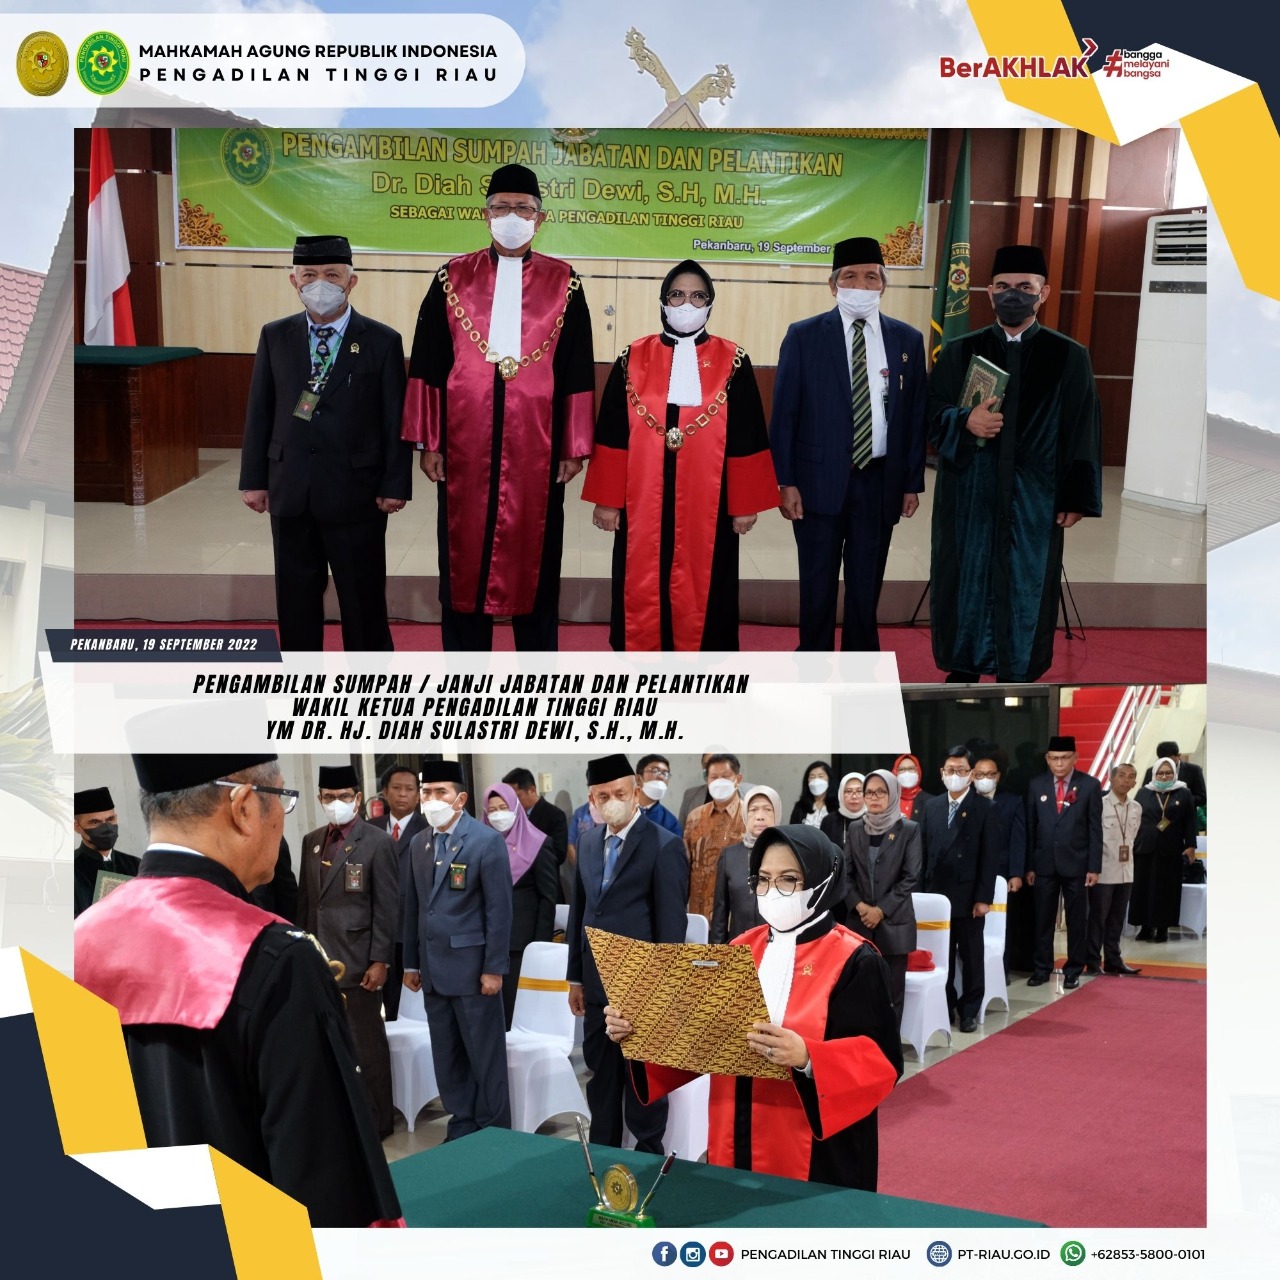 Pengambilan Sumpah / Janji Jabatan dan Pelantikan Wakil Ketua Pengadilan Tinggi Riau